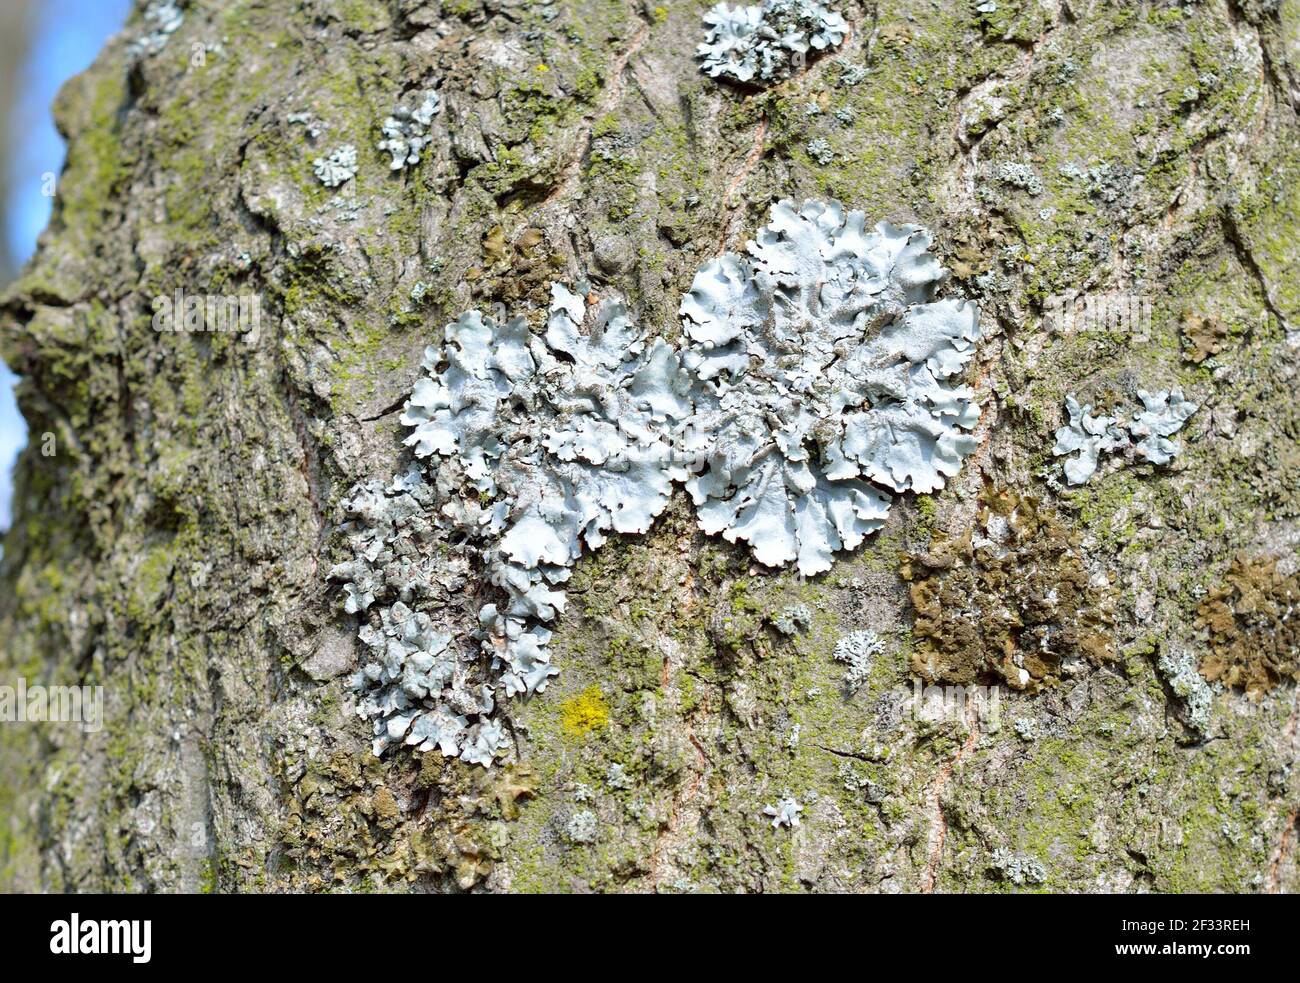 Flavoparmelia caperata. lichen on the bark of a tree. Stock Photo